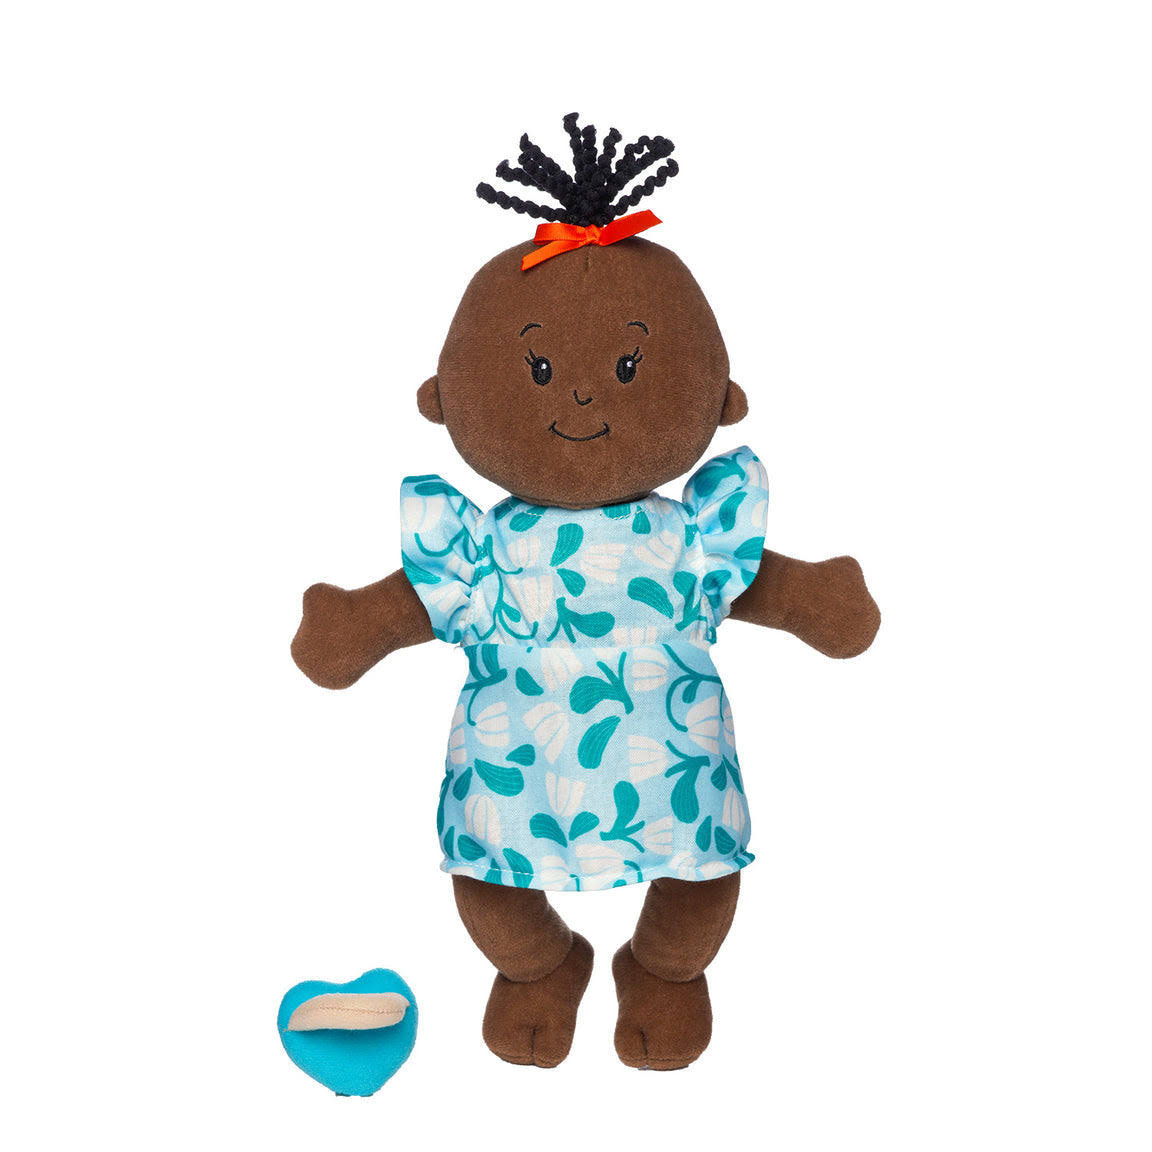 Manhattan Toy Wee Baby Stella Doll - Brown with Black Wavy Tuft